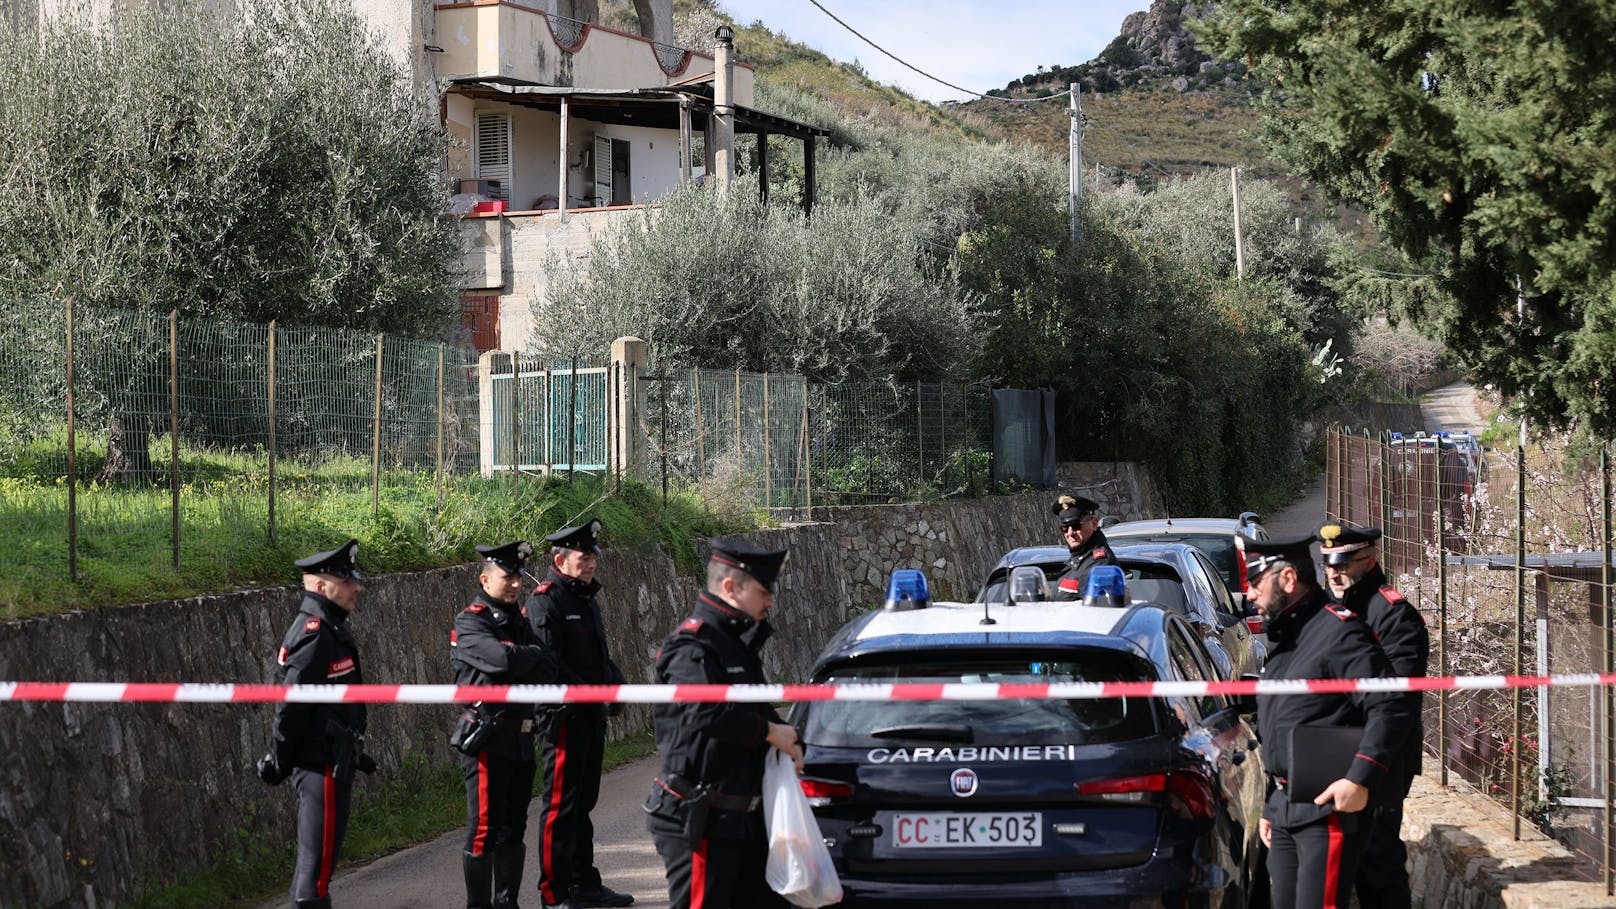 "Teufel war im Haus" – Bluttat schockt ganz Italien